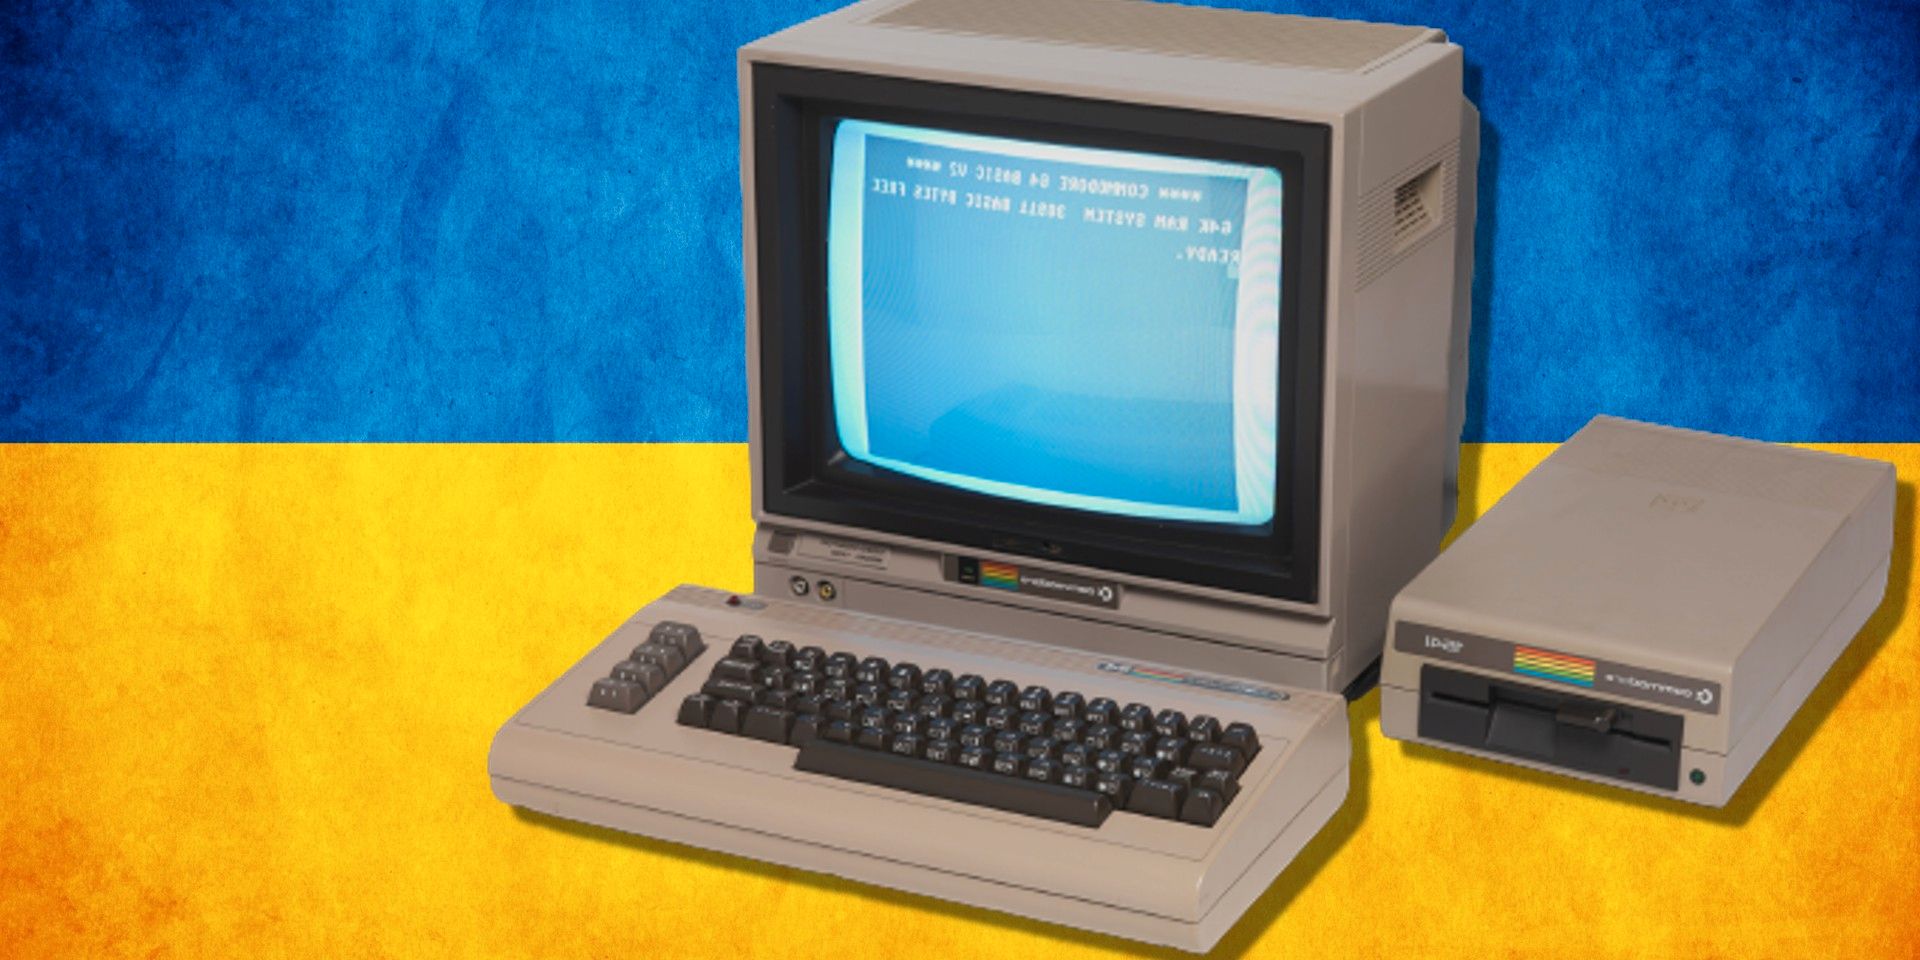 Museo de Computadoras y Videojuegos en Ucrania destruido por bomba